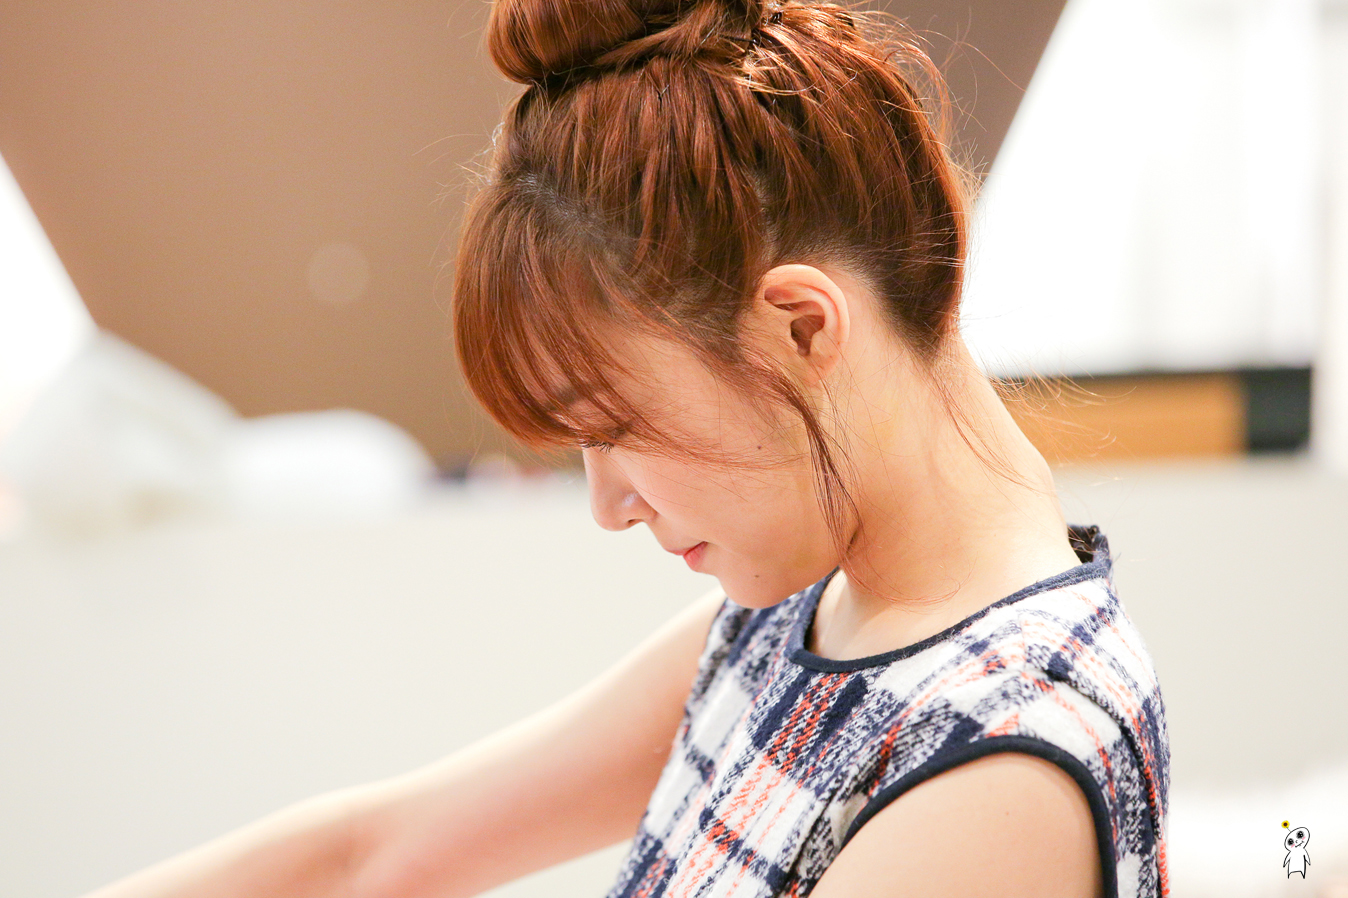 [PIC][28-11-2013]Tiffany ghé thăm cửa hàng "QUA" ở Hyundai Department Store vào trưa nay - Page 3 2330B44152980C942E2171